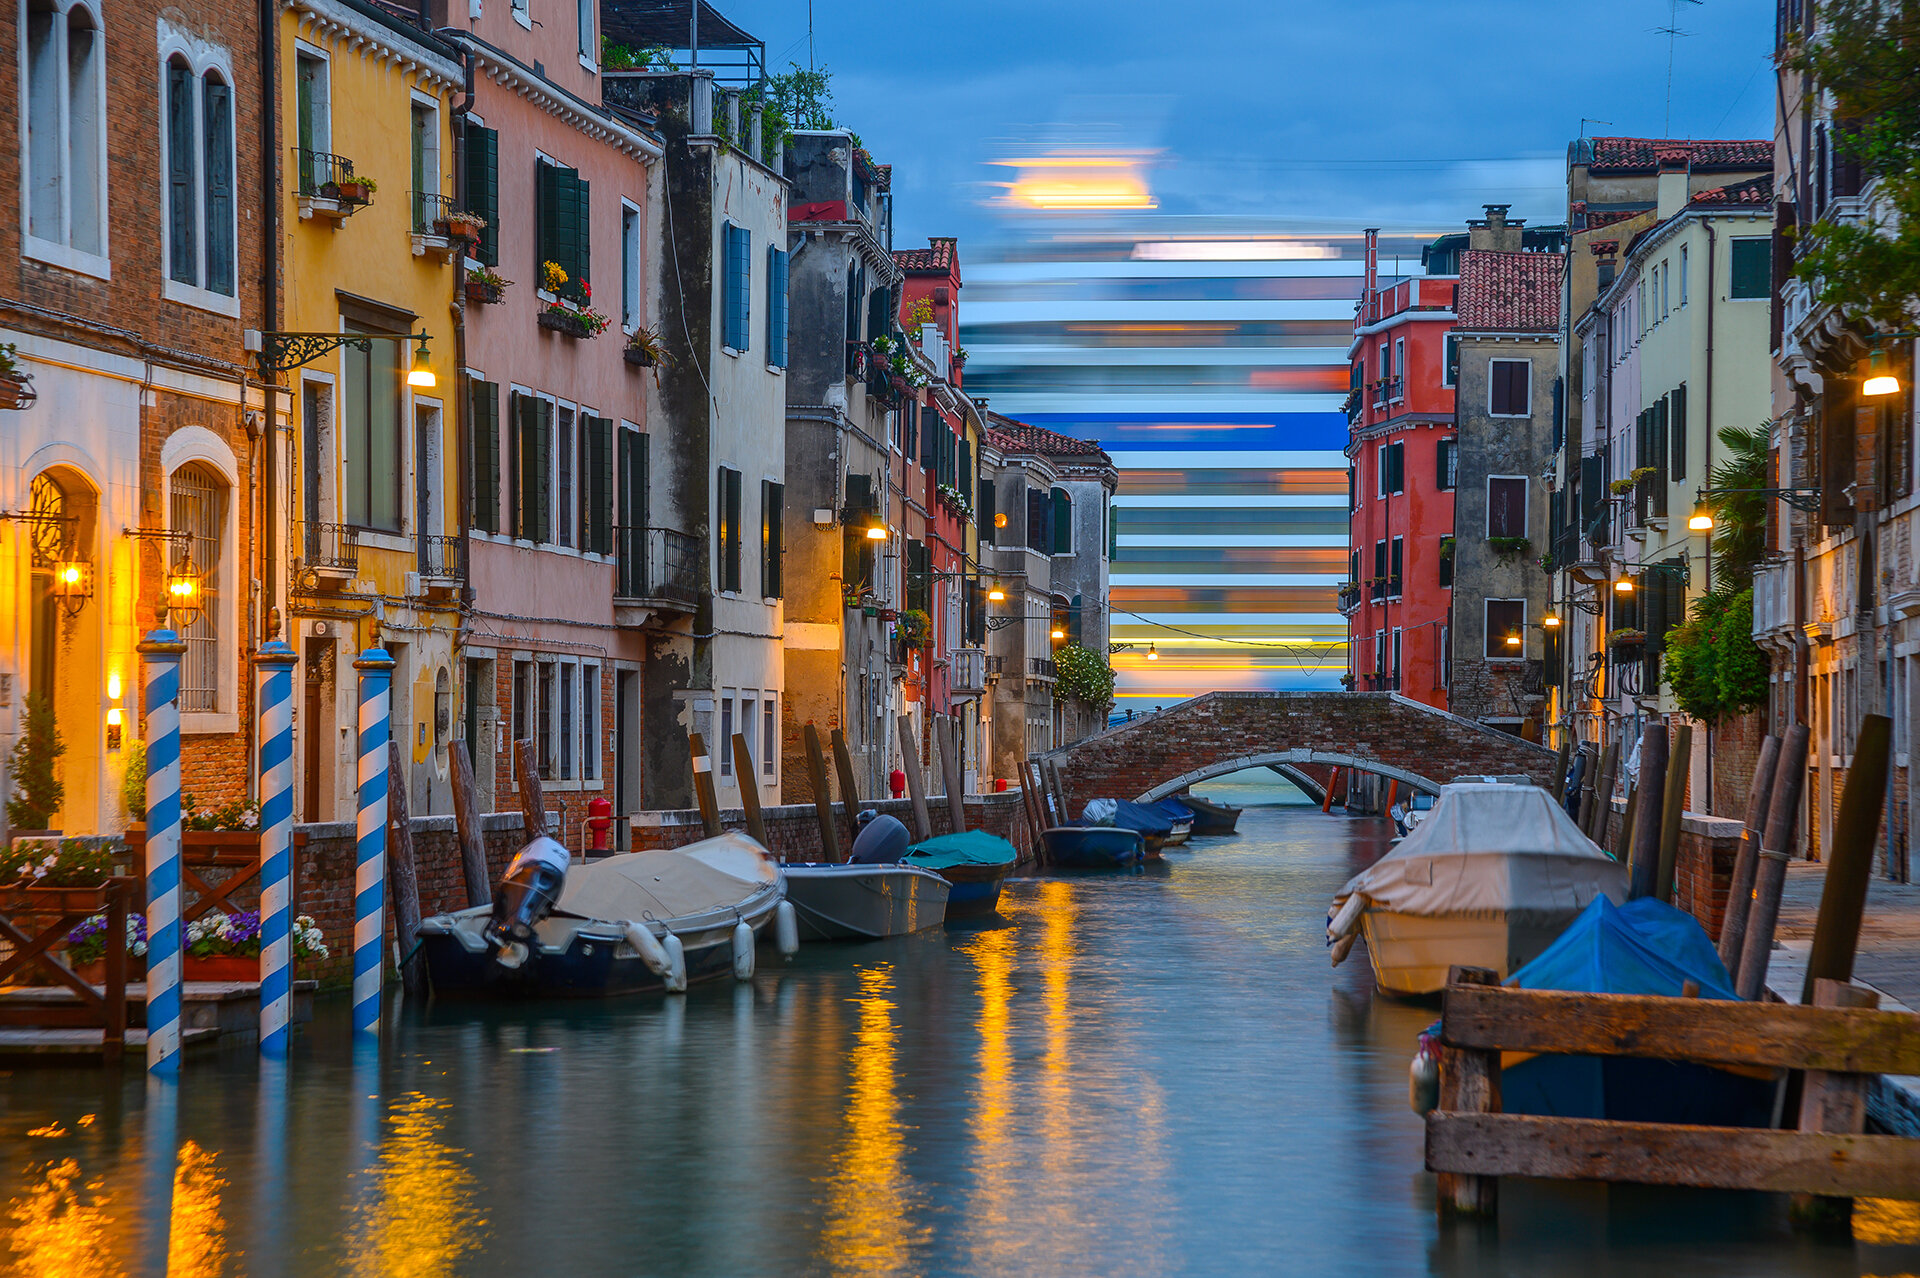   Venice - Italy  